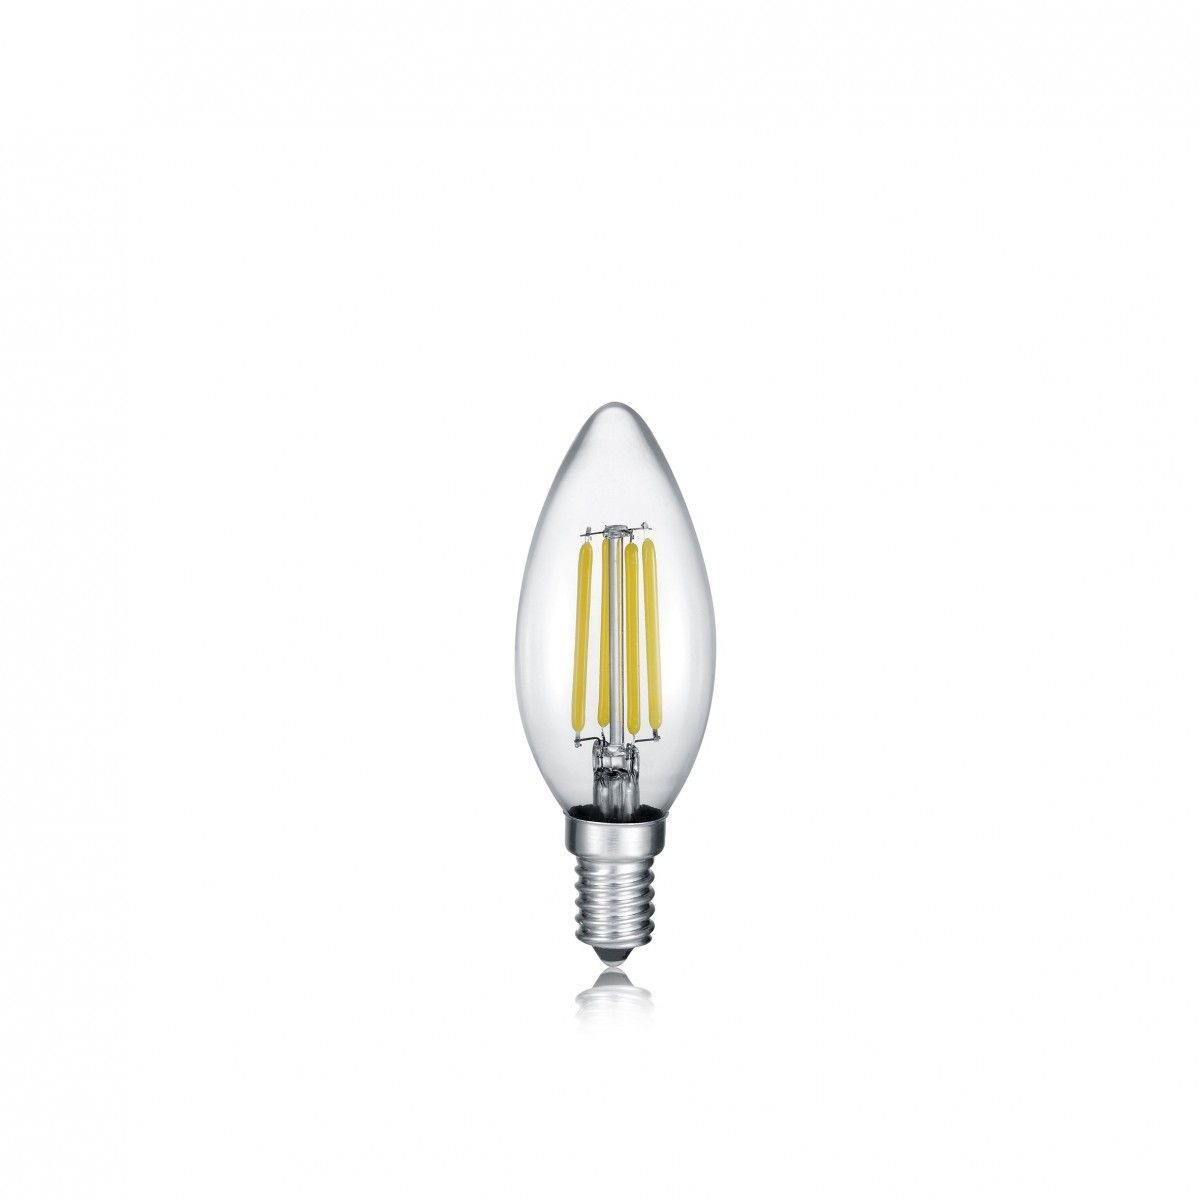 Trio 989-400 LED filamentová žárovka Kerze 1x4W | E14 | 470lm | 3000K - A-LIGHT s.r.o.